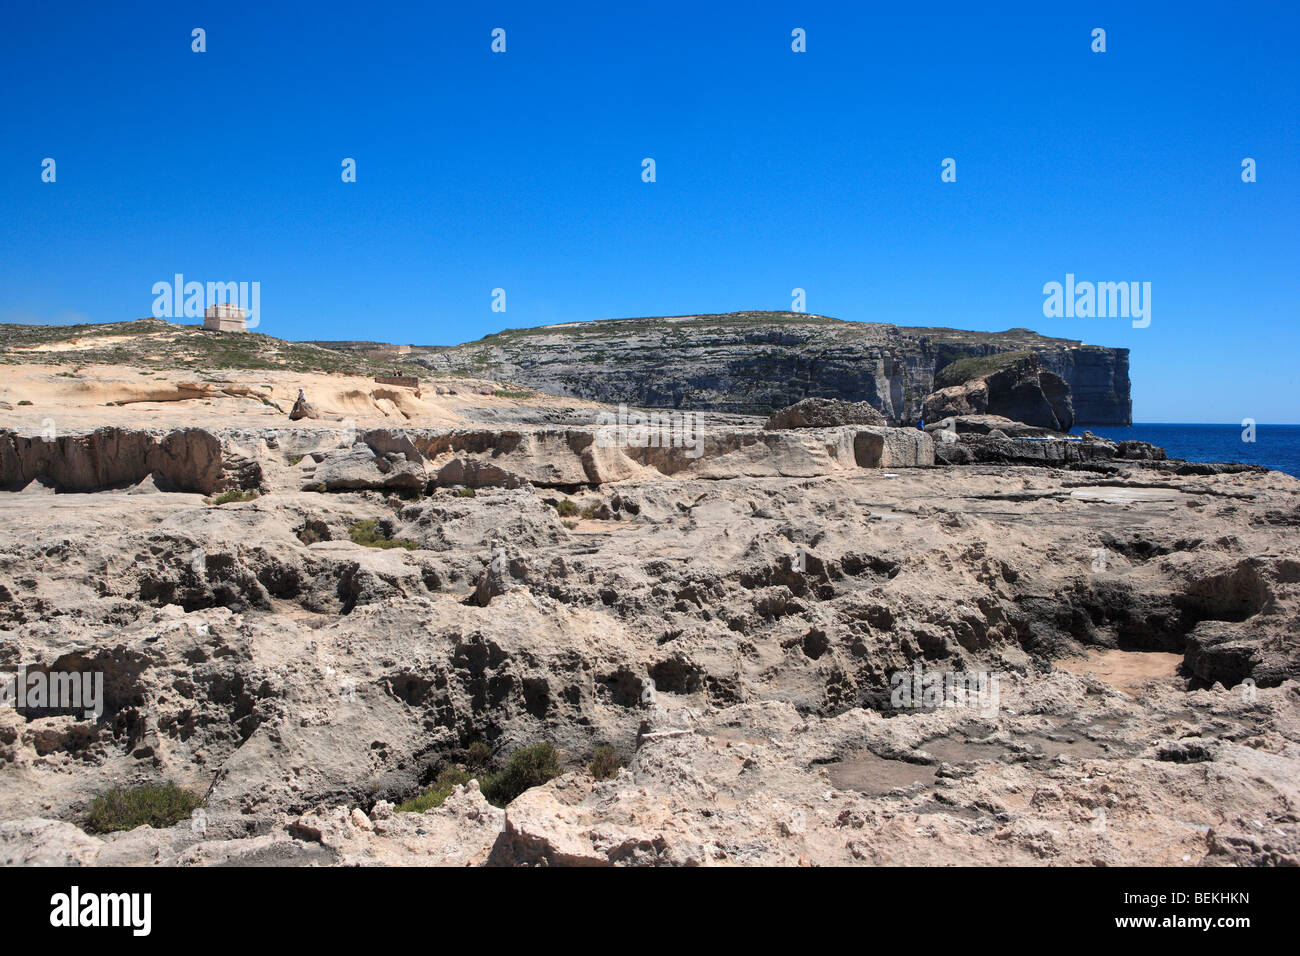 Dwejra Point and Fungus Rock, Dwejra, Gozo, Malta Stock Photo